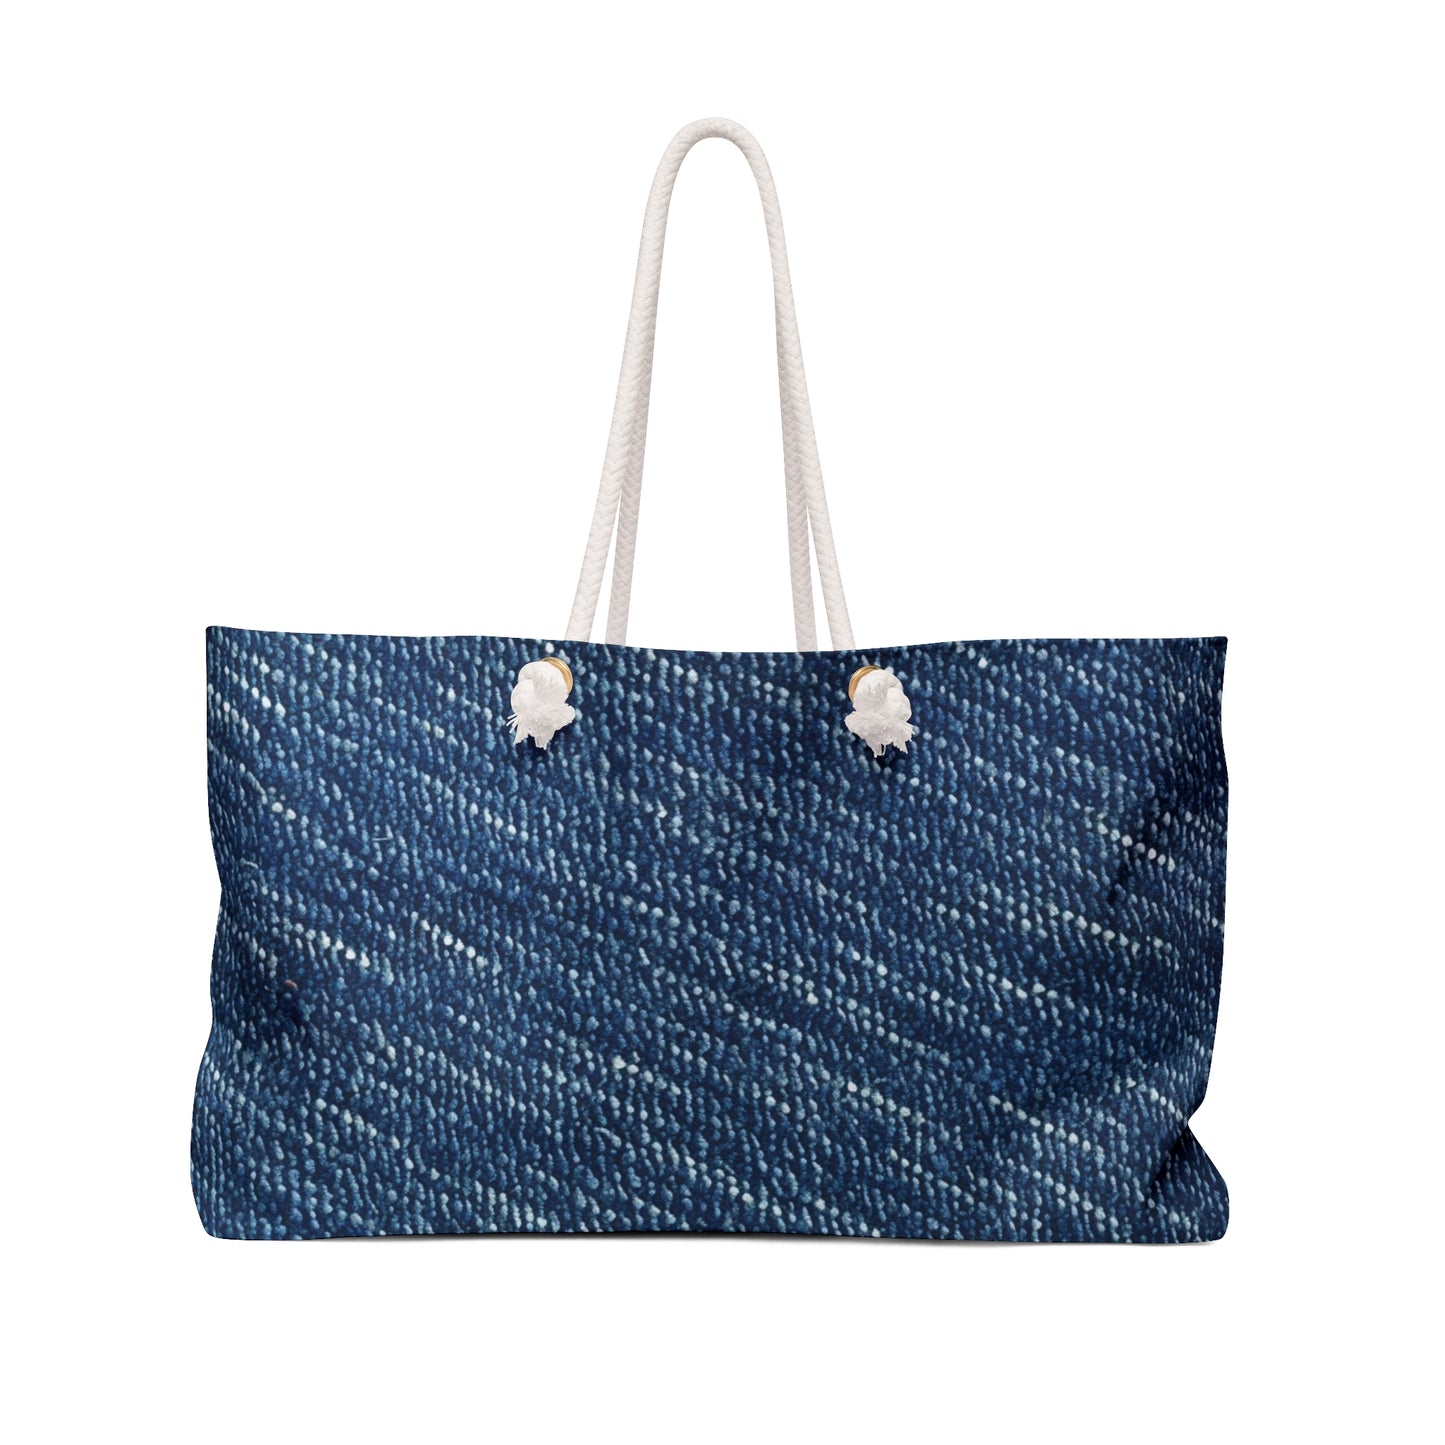 Denim-Inspired Design - Distinct Textured Fabric Pattern - Weekender Bag